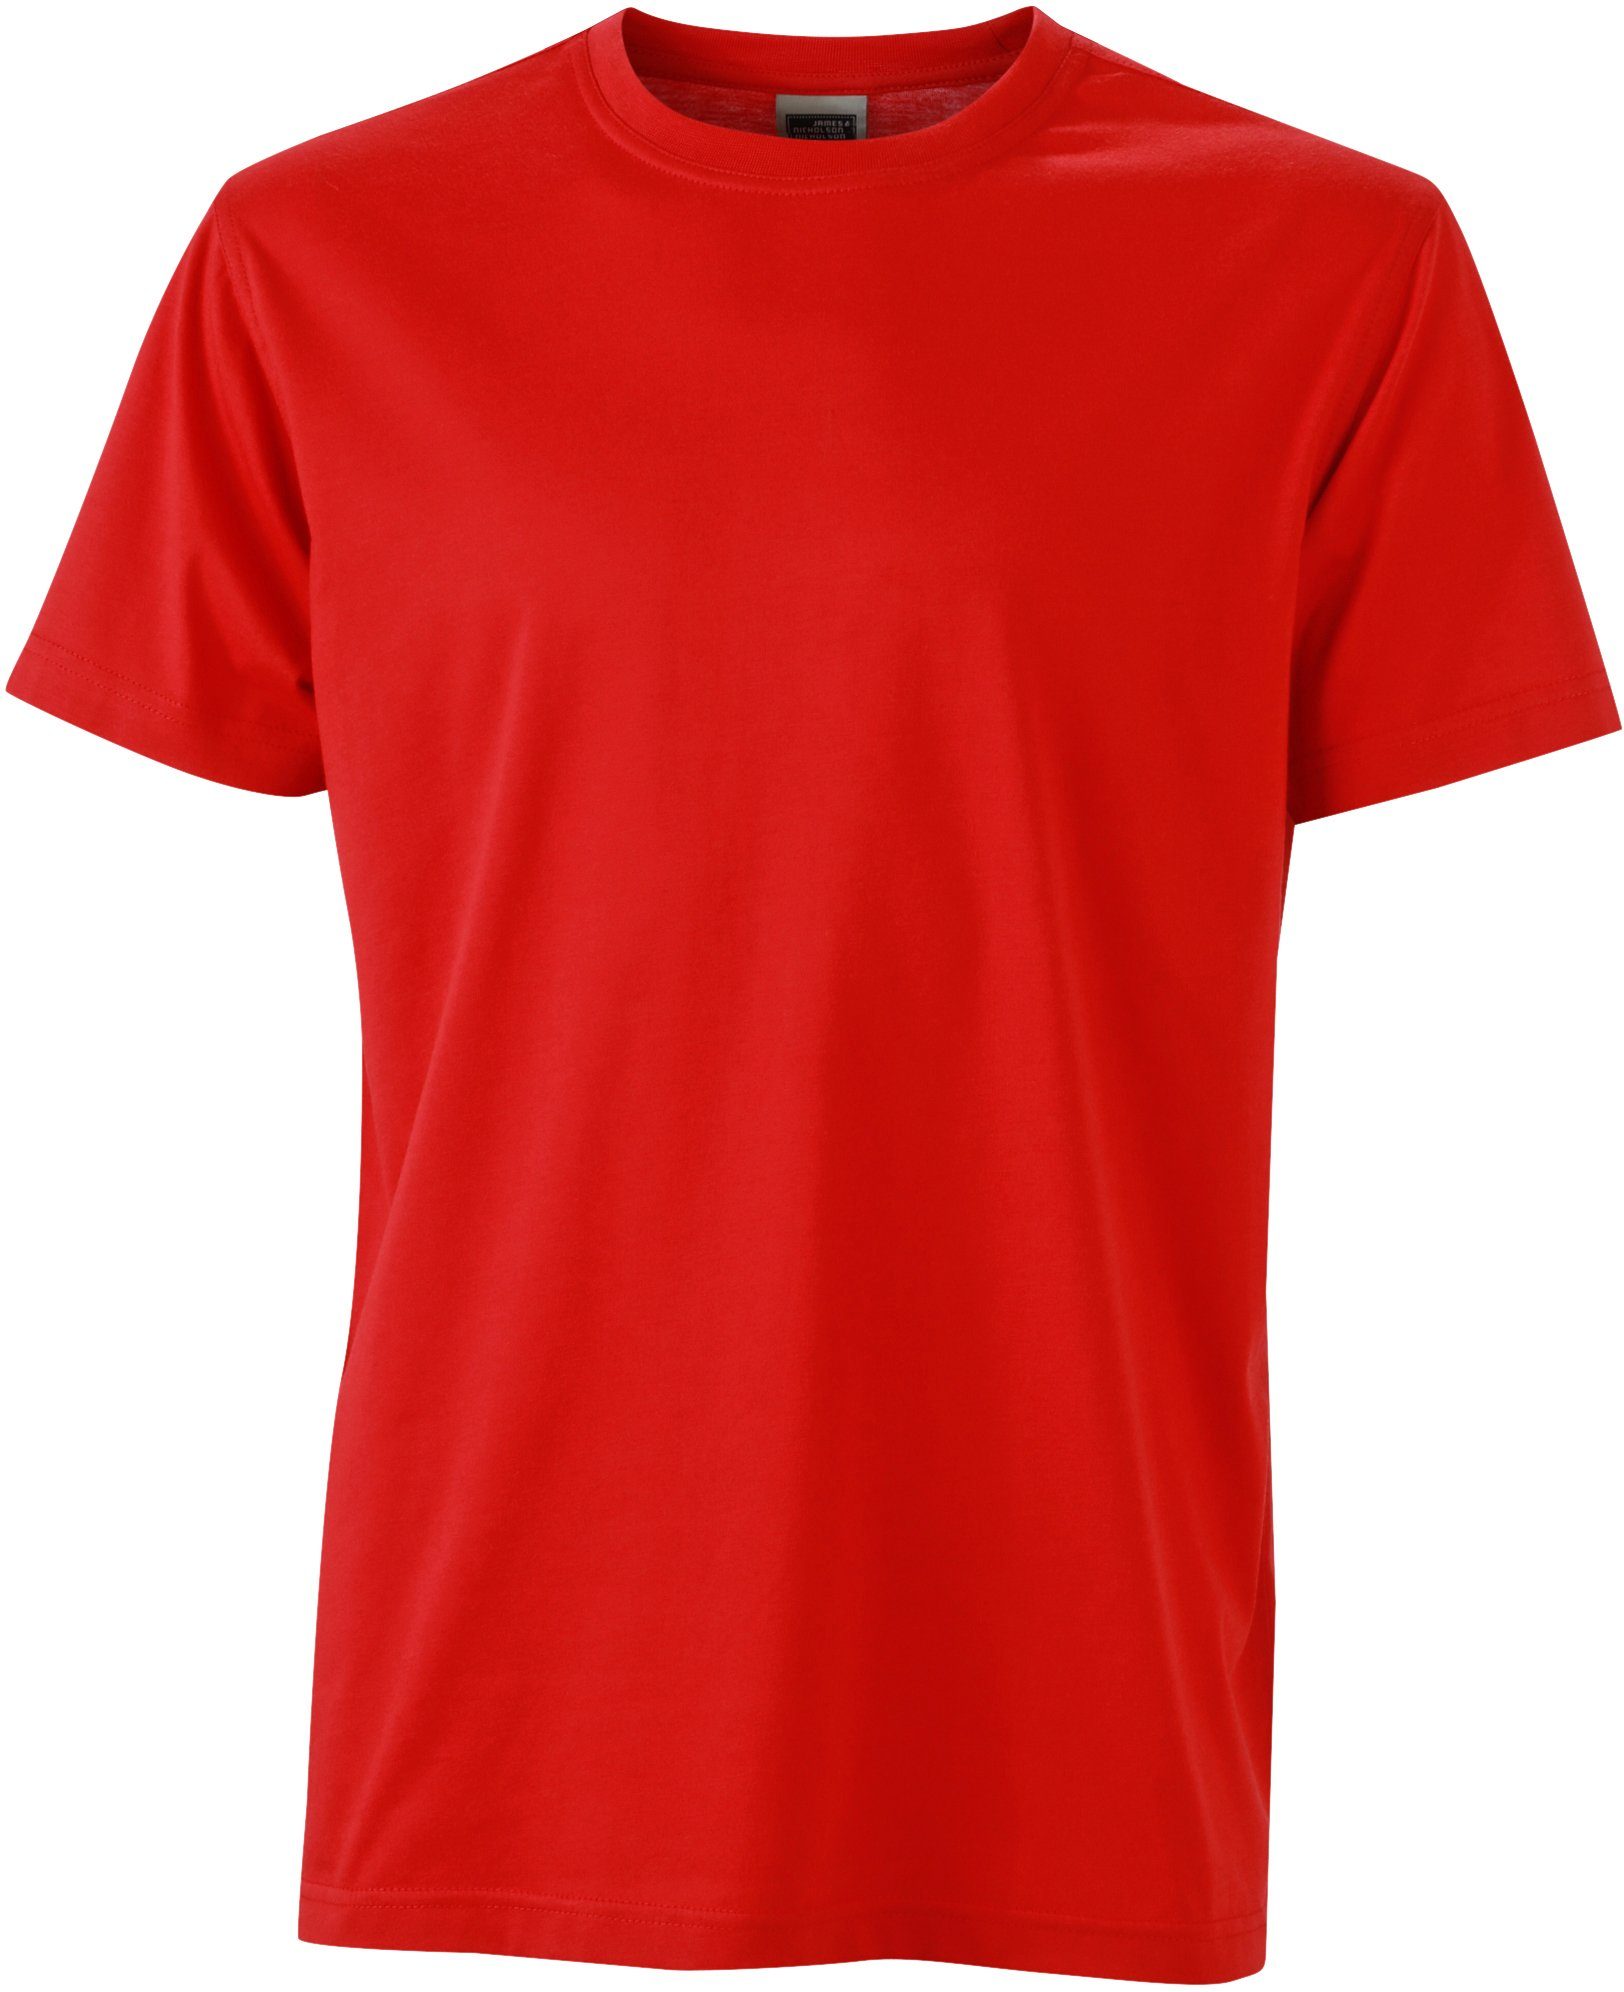 James & Nicholson T-Shirt Workwear T-Shirt FaS50838 auch in großen Größen RED | T-Shirts